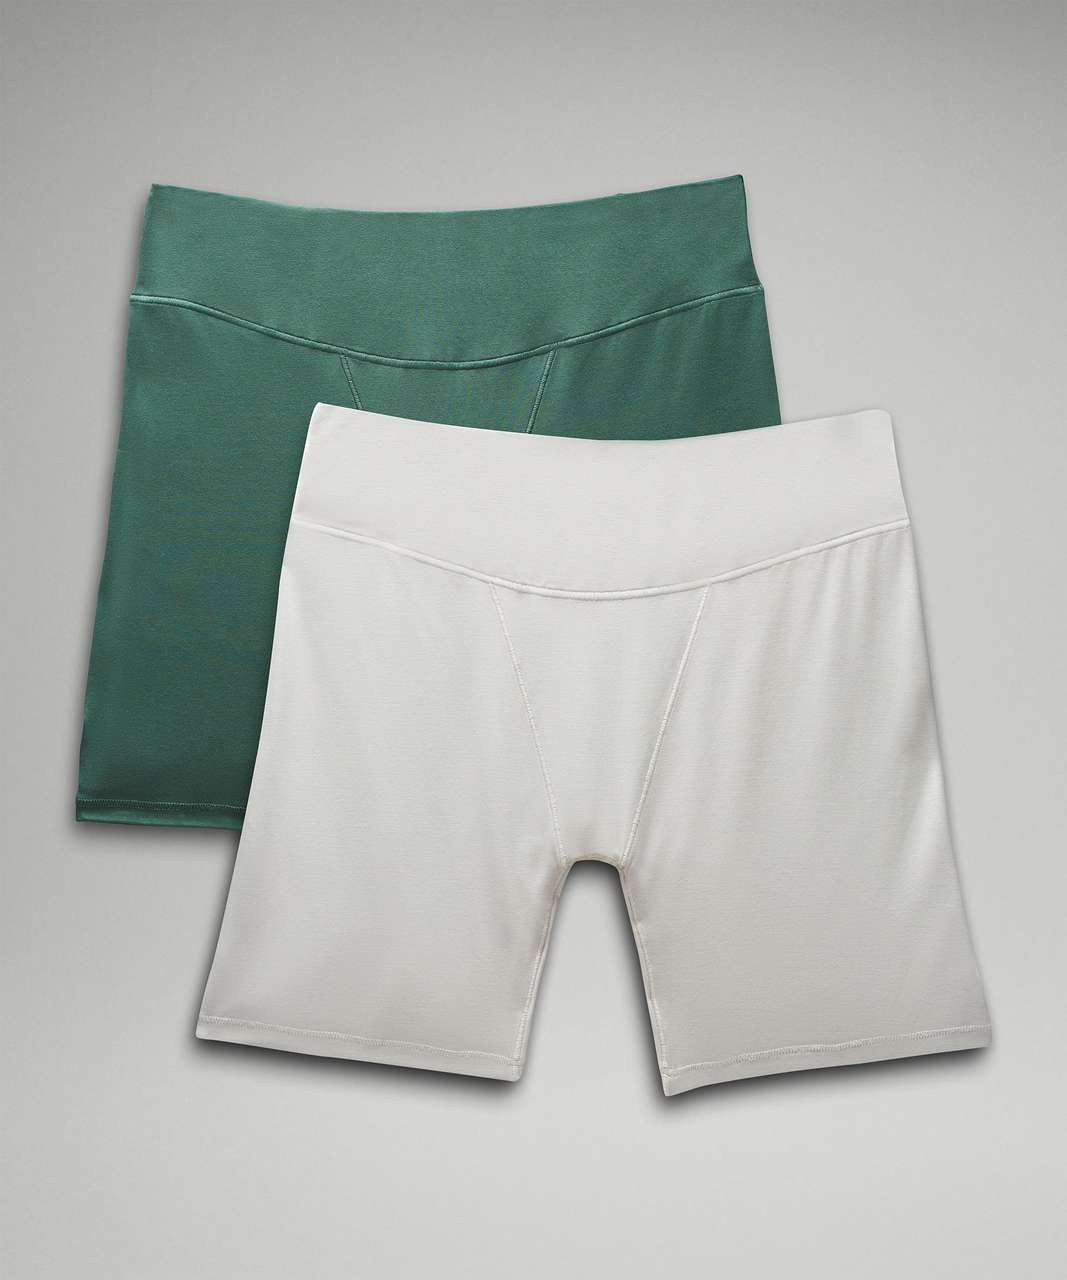 Lululemon UnderEase Super-High-Rise Shortie Underwear 5 - Pale